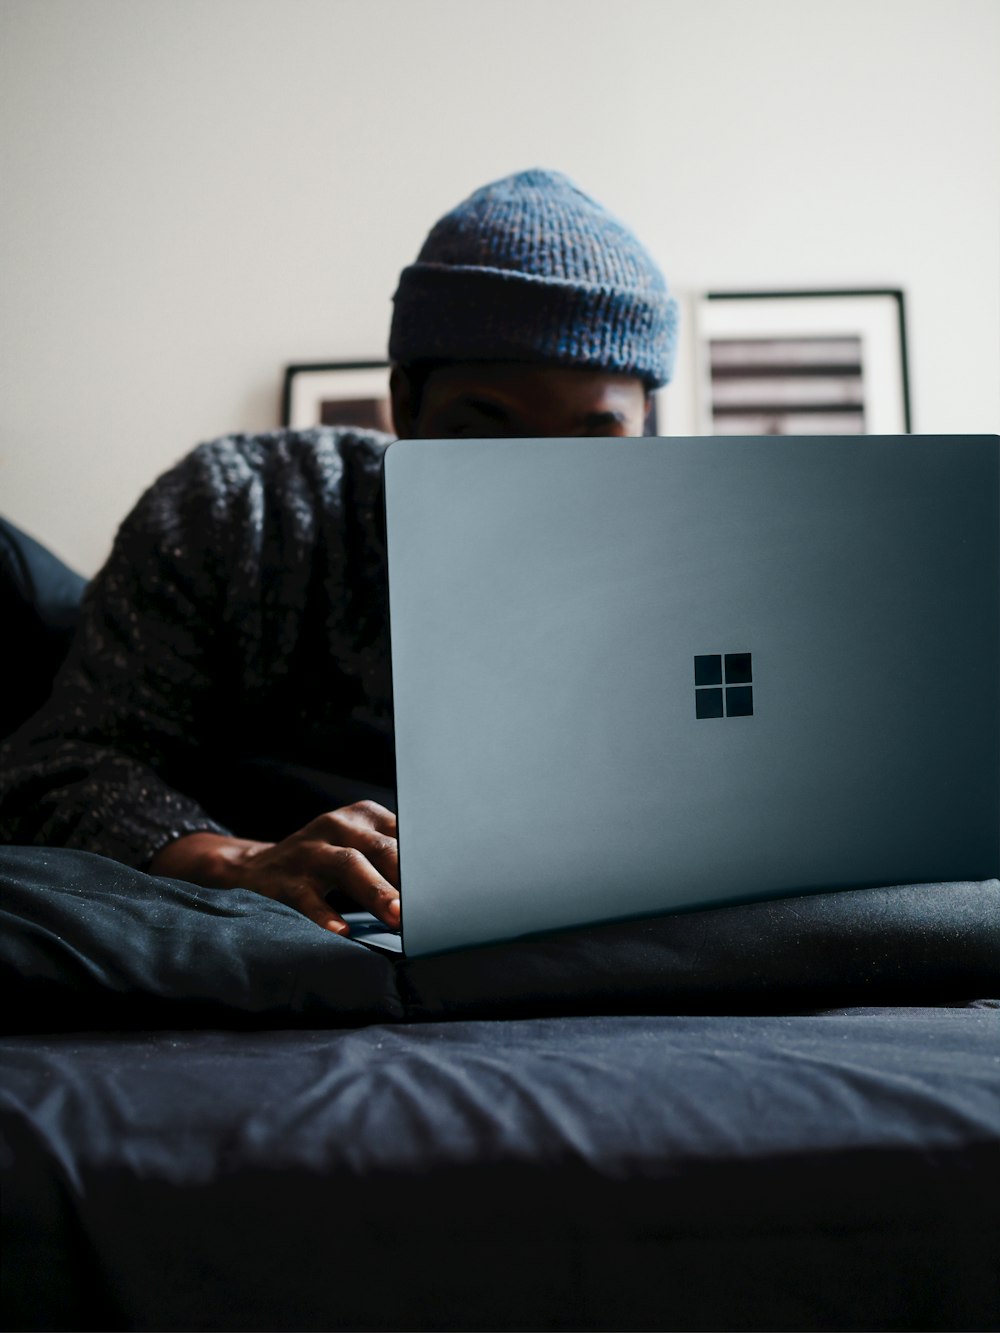 コバルト ブルーの Microsoft Surface コンピューターを使用するグレーのニット帽をかぶった人物